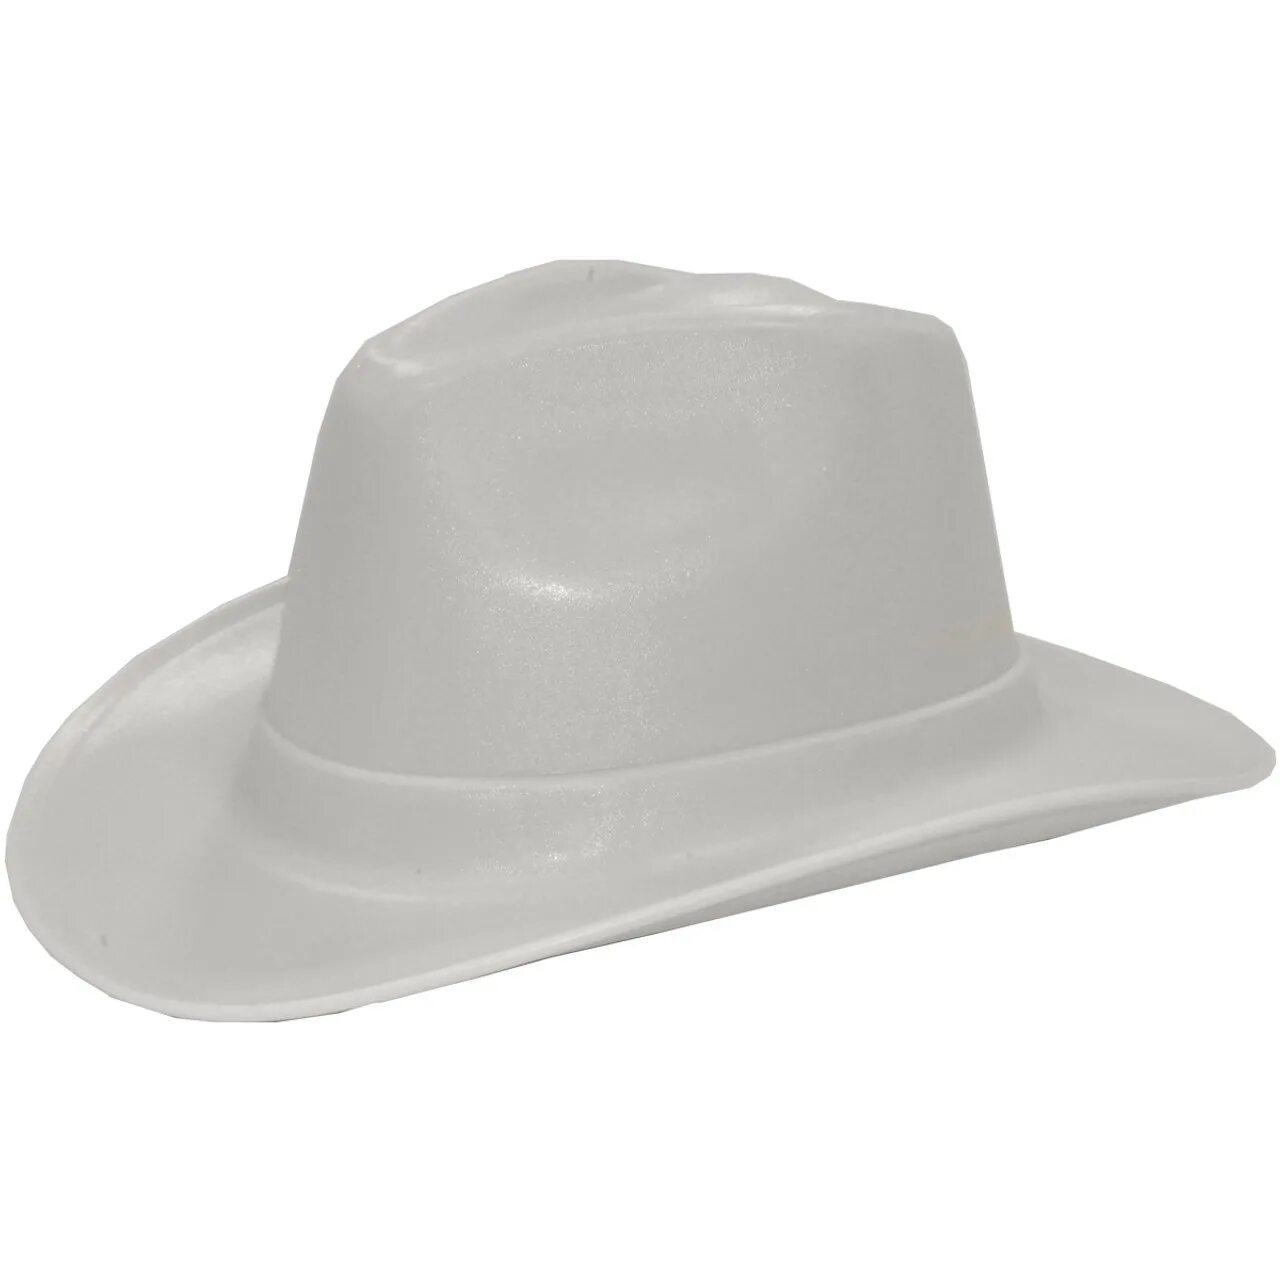 Каска в форме шляпы. Vulka vcb100-00 hard hat строительная. Cowboy hat каска. Vulcan Cowboy Style hard hat White. Каска защитная ковбойская шляпа.